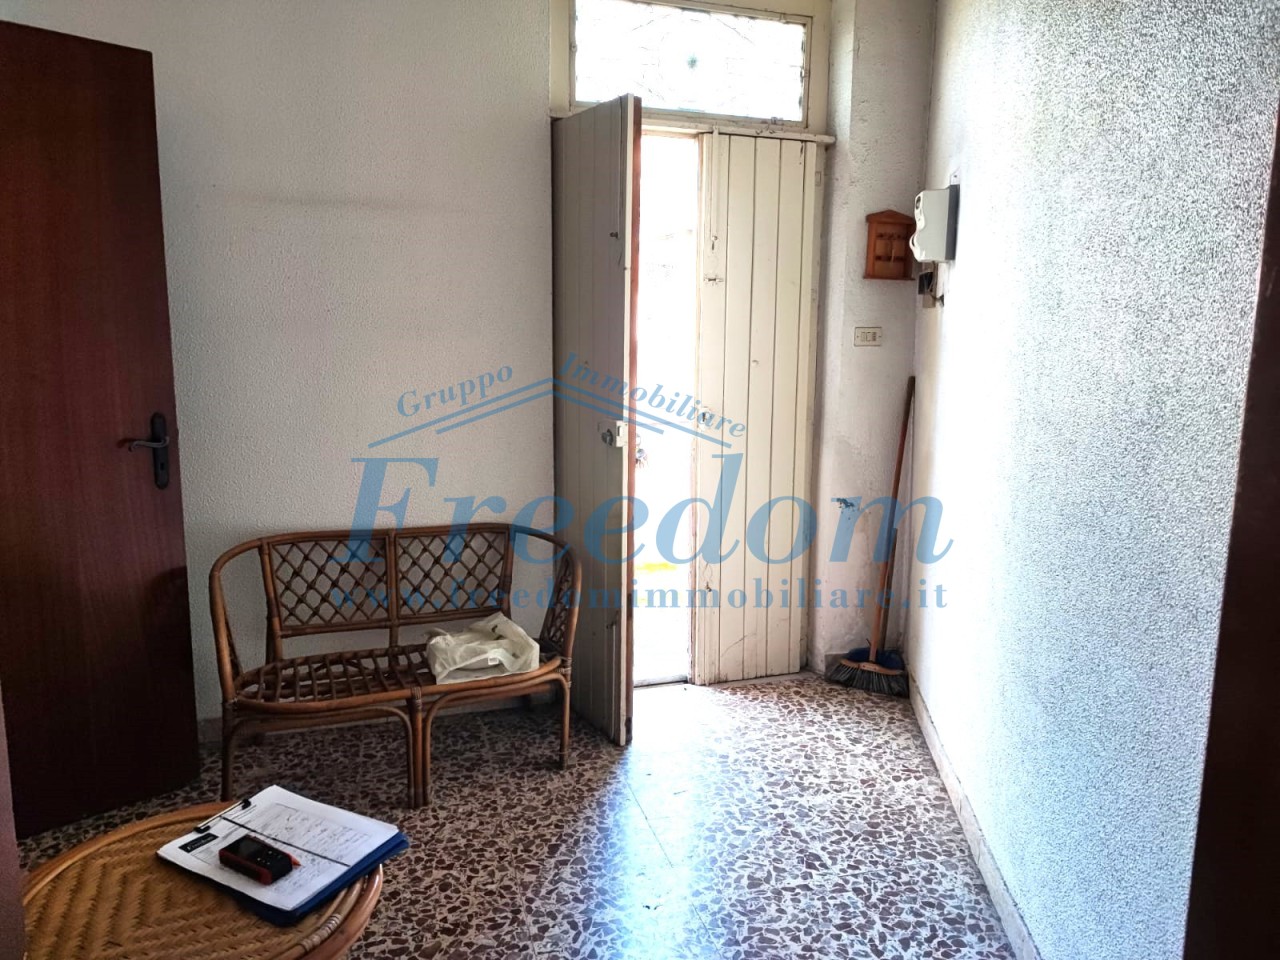 Appartamento in vendita a Ragalna, 4 locali, prezzo € 59.000 | PortaleAgenzieImmobiliari.it